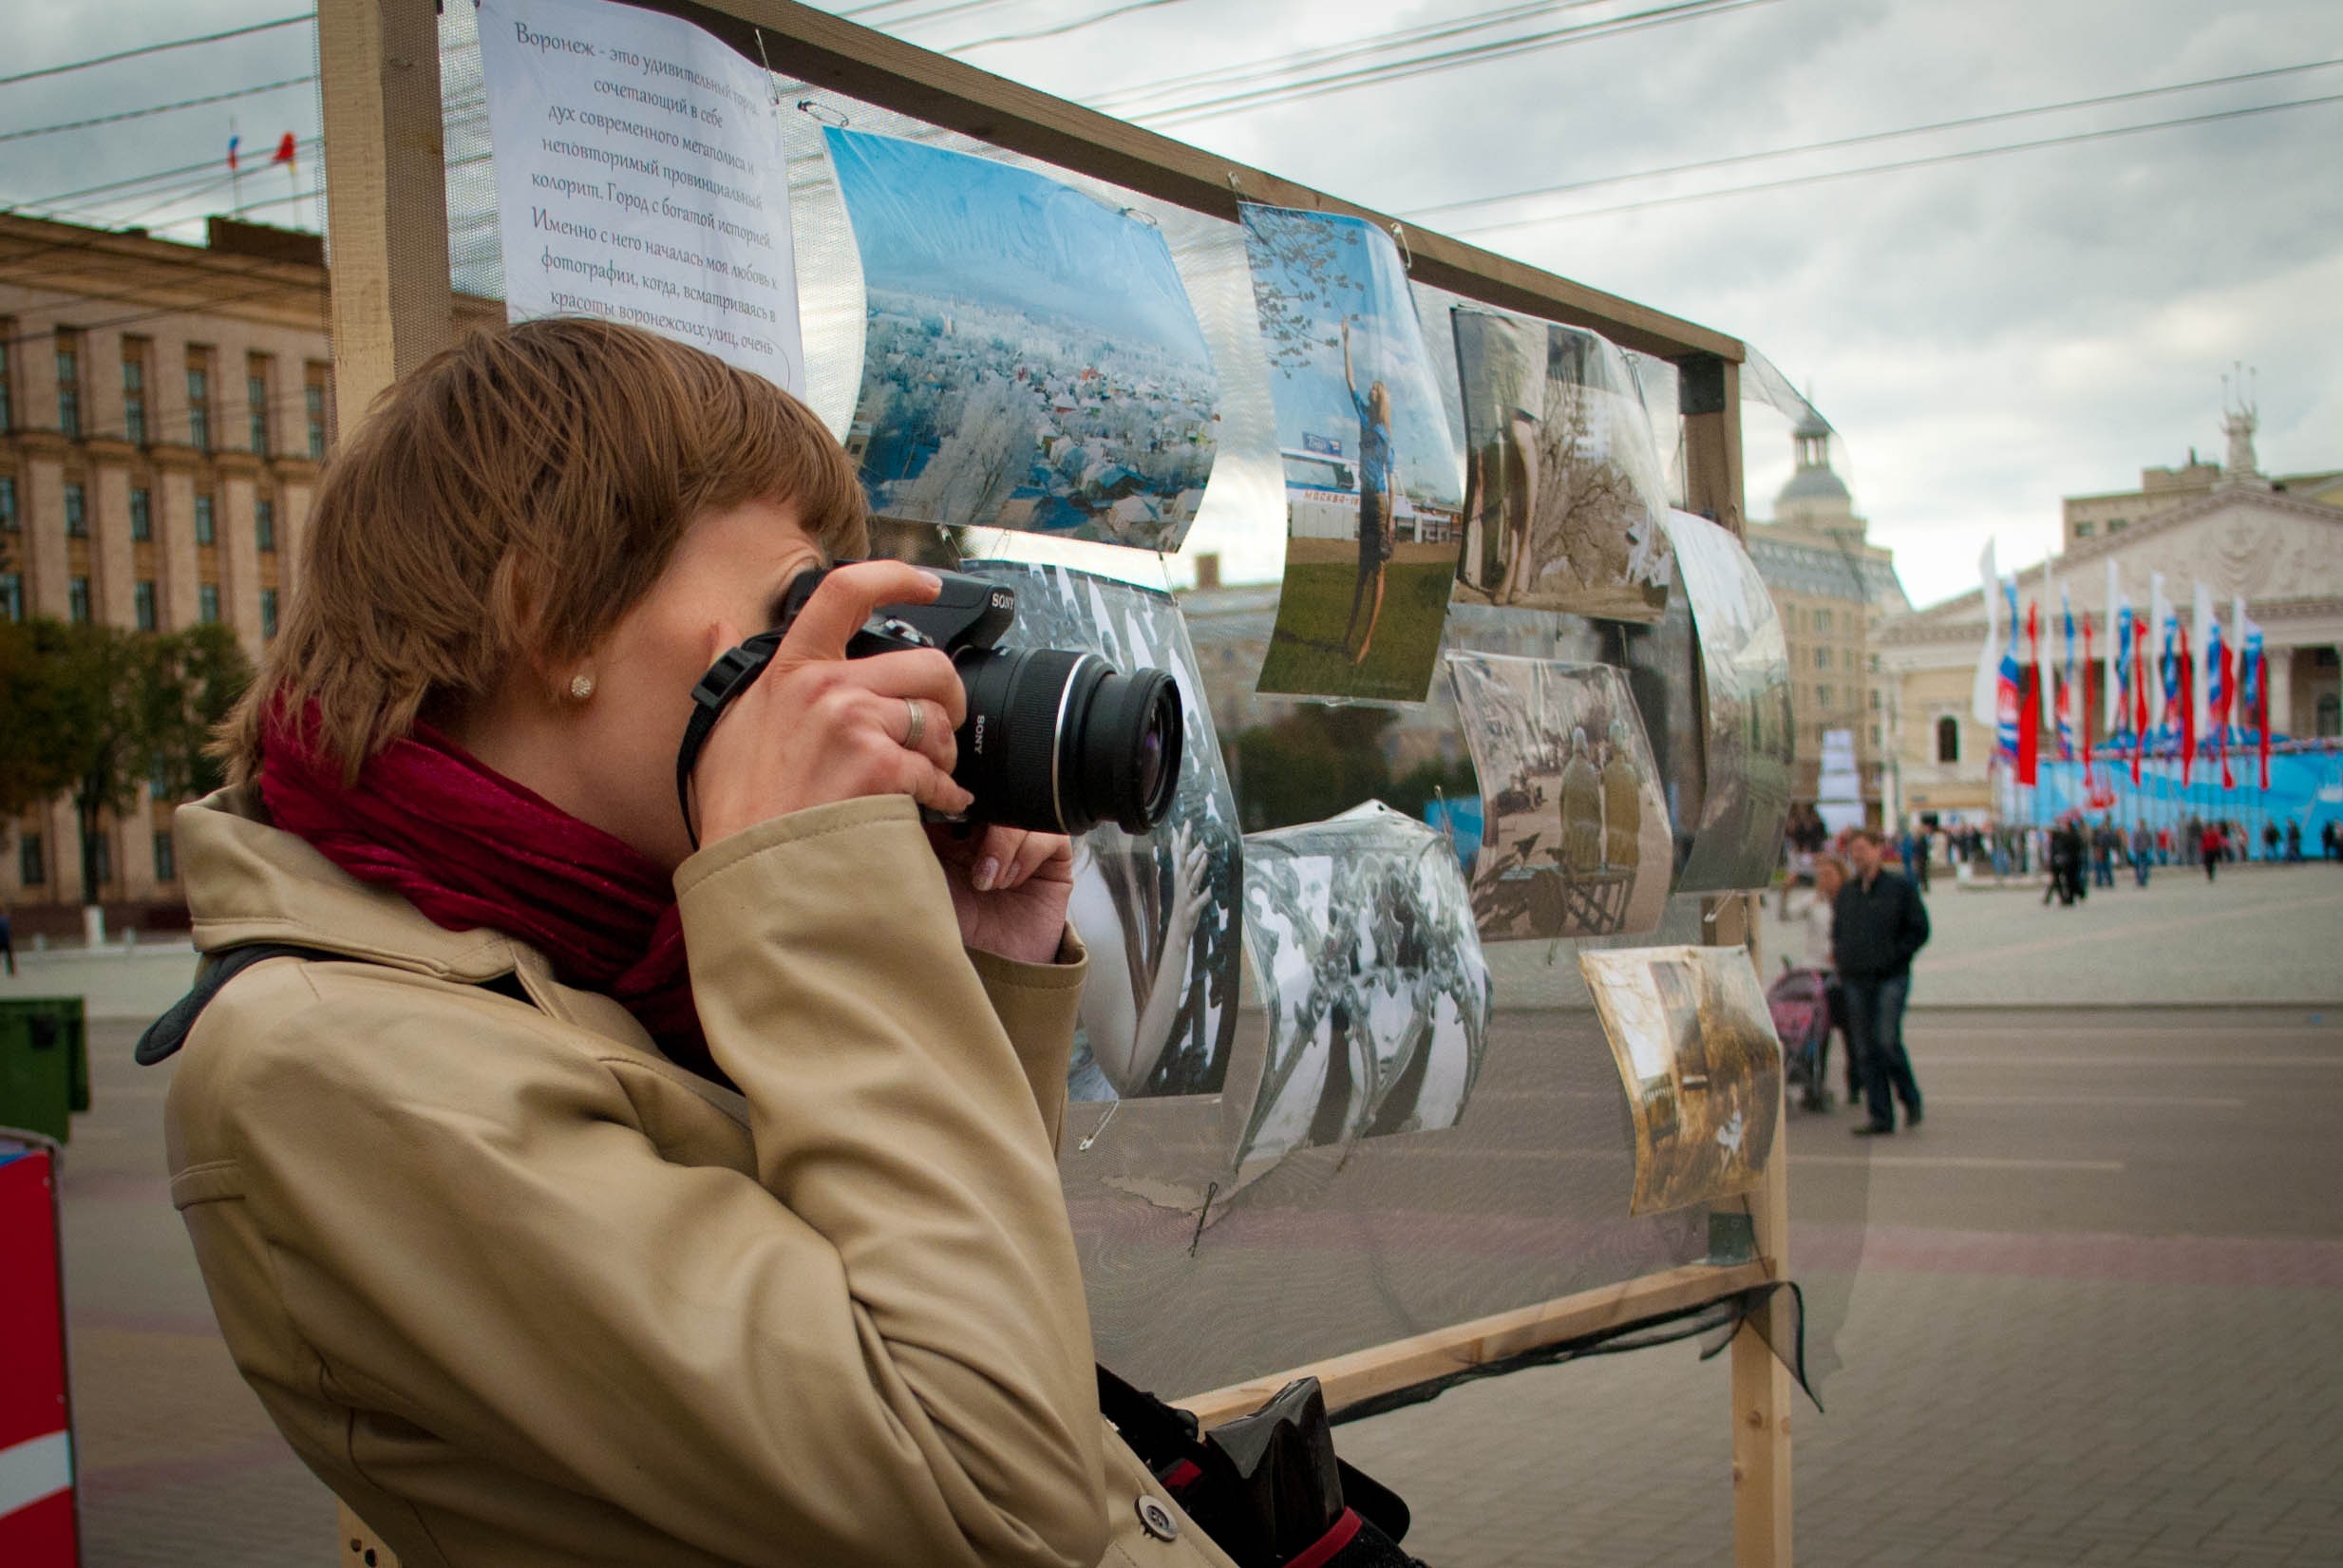 ФотоВикия проводит выставку в Липецке 19 ноября